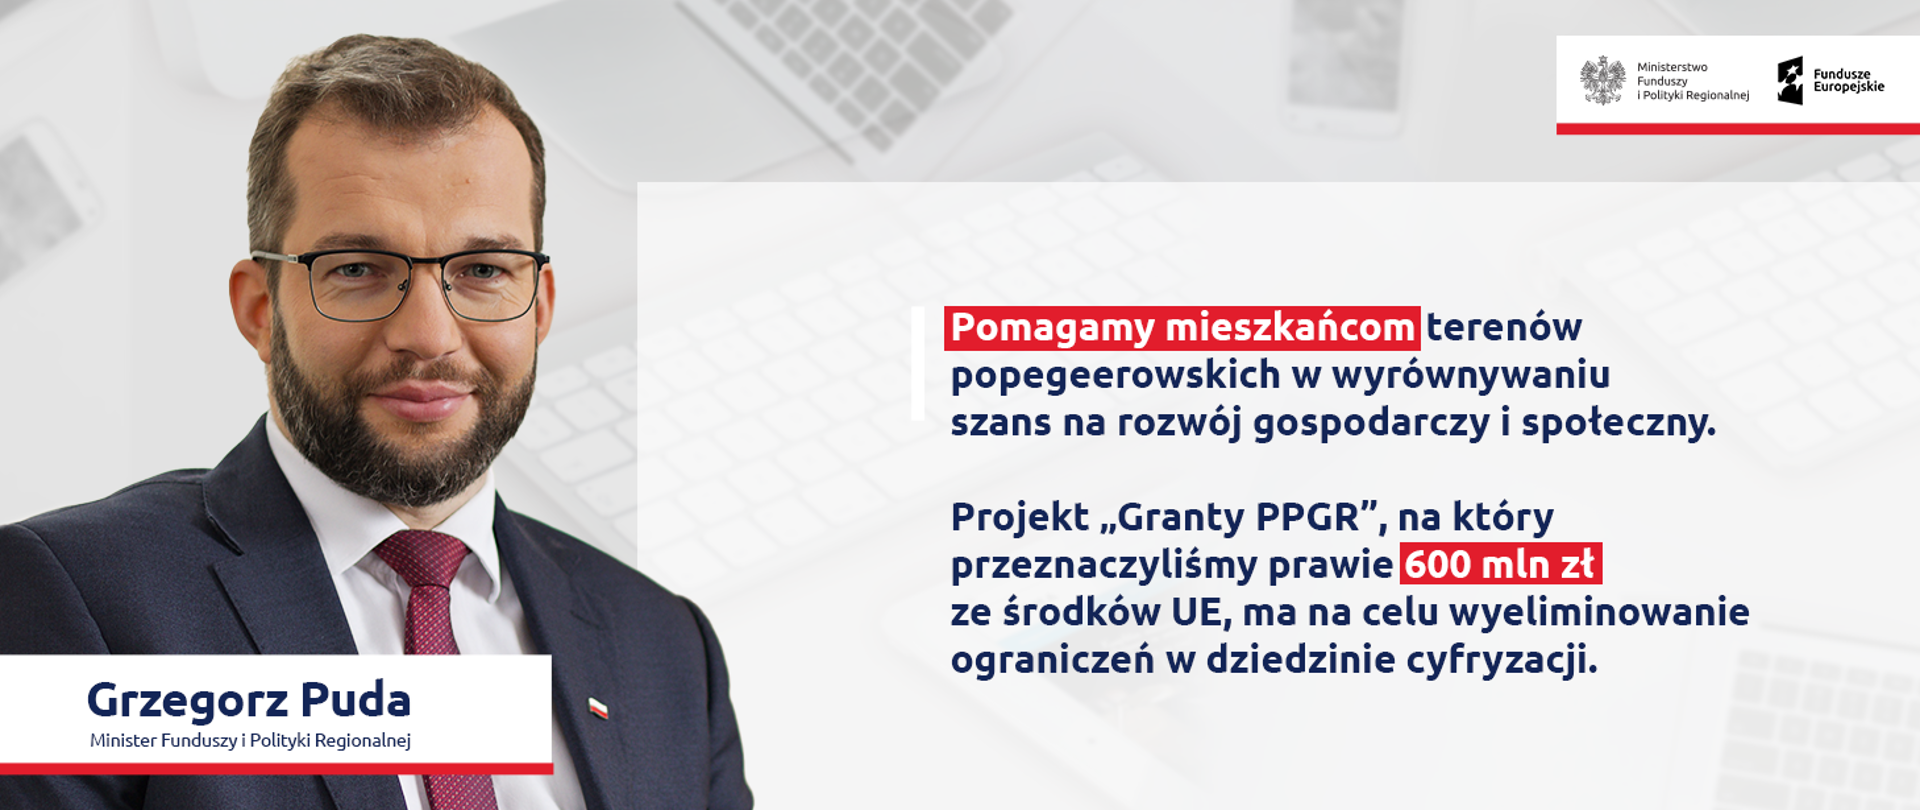 Zdjęcie portretowe ministra Grzegorza Pudy, z prawej strony cytat: Pomagamy mieszkańcom terenów popegeerowskich w wyrównywaniu szans na rozwój gospodarczy i społeczny. Projekt „Granty PPGR”, na który przeznaczyliśmy prawie 600 mln zł ze środków UE, ma na celu wyeliminowanie ograniczeń w dziedzinie cyfryzacji. 